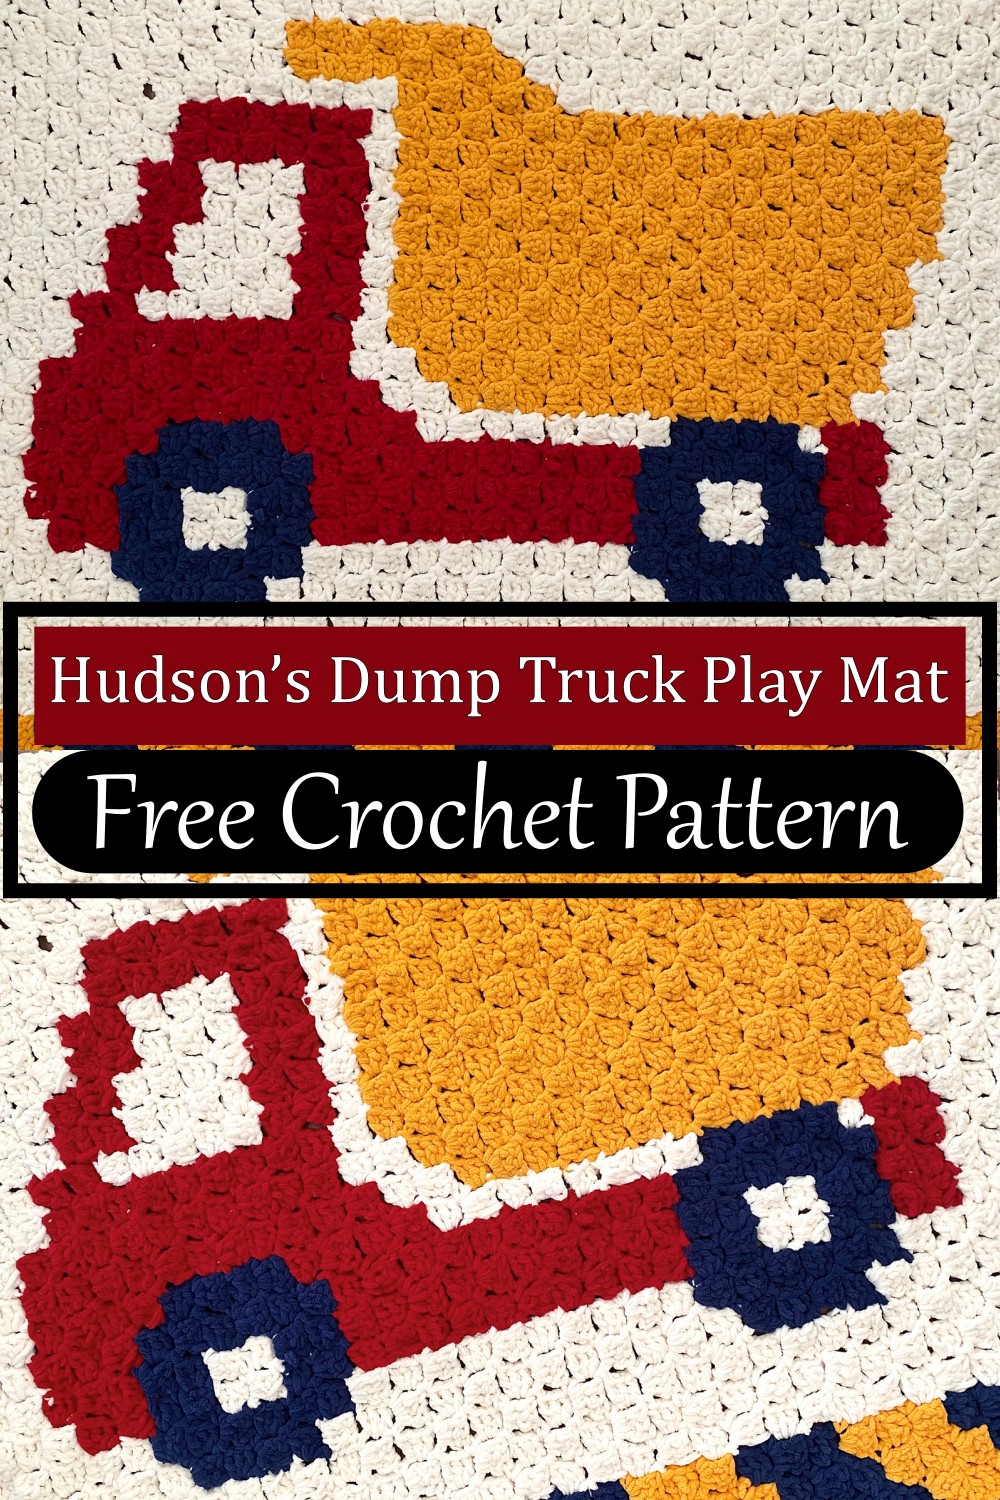 Hudson’s Dump Truck Play Mat